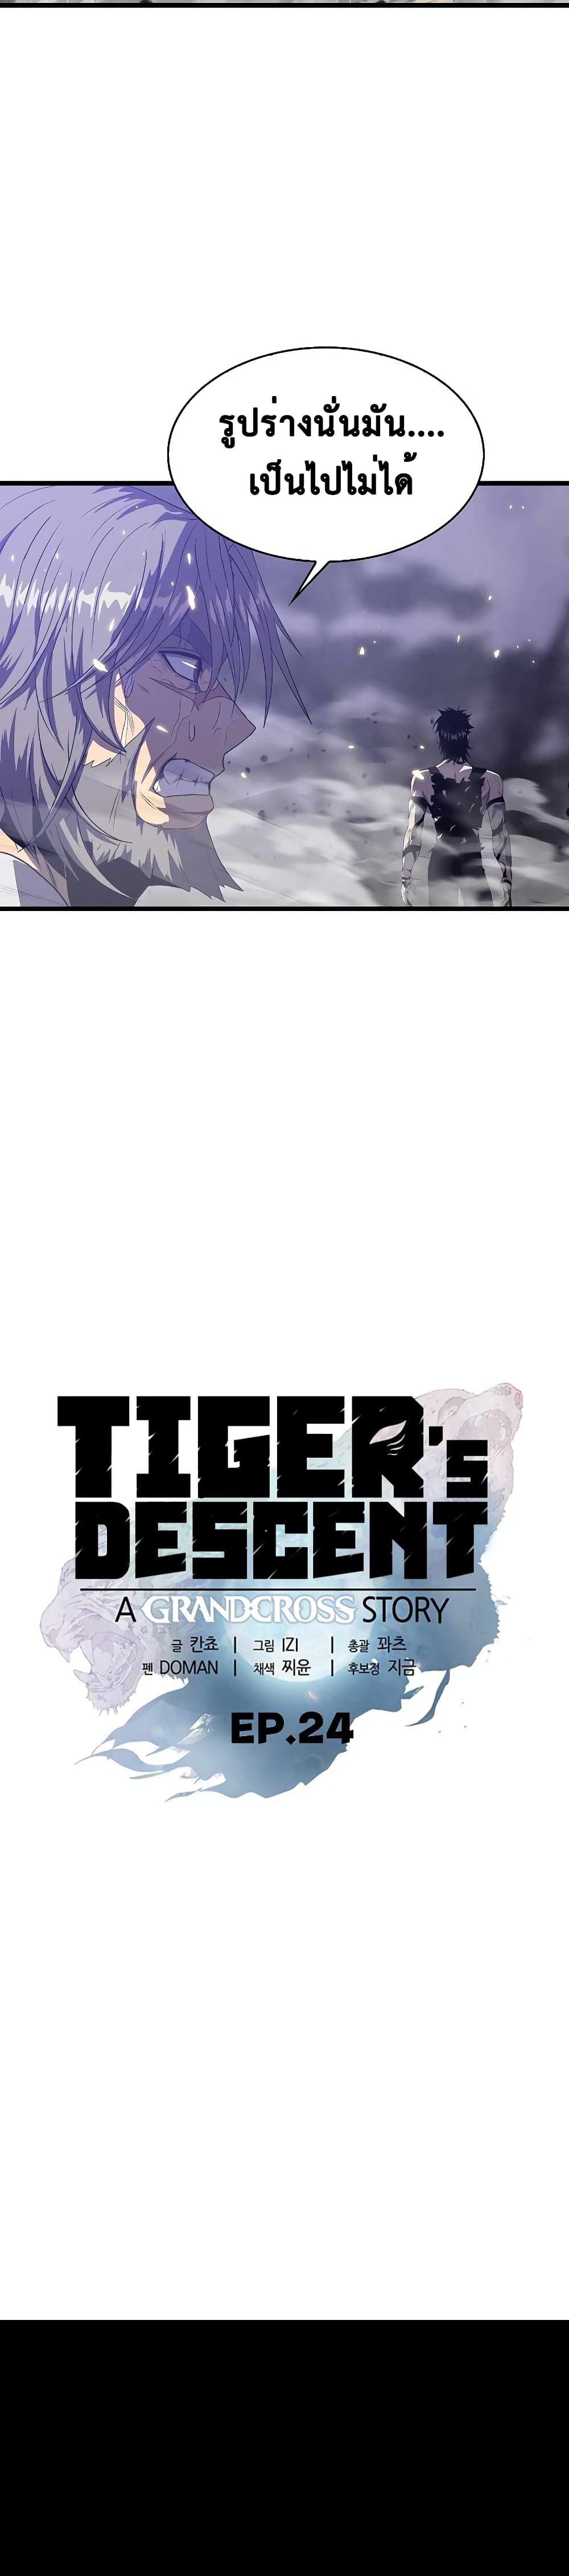 Tiger’s Descent 24 02